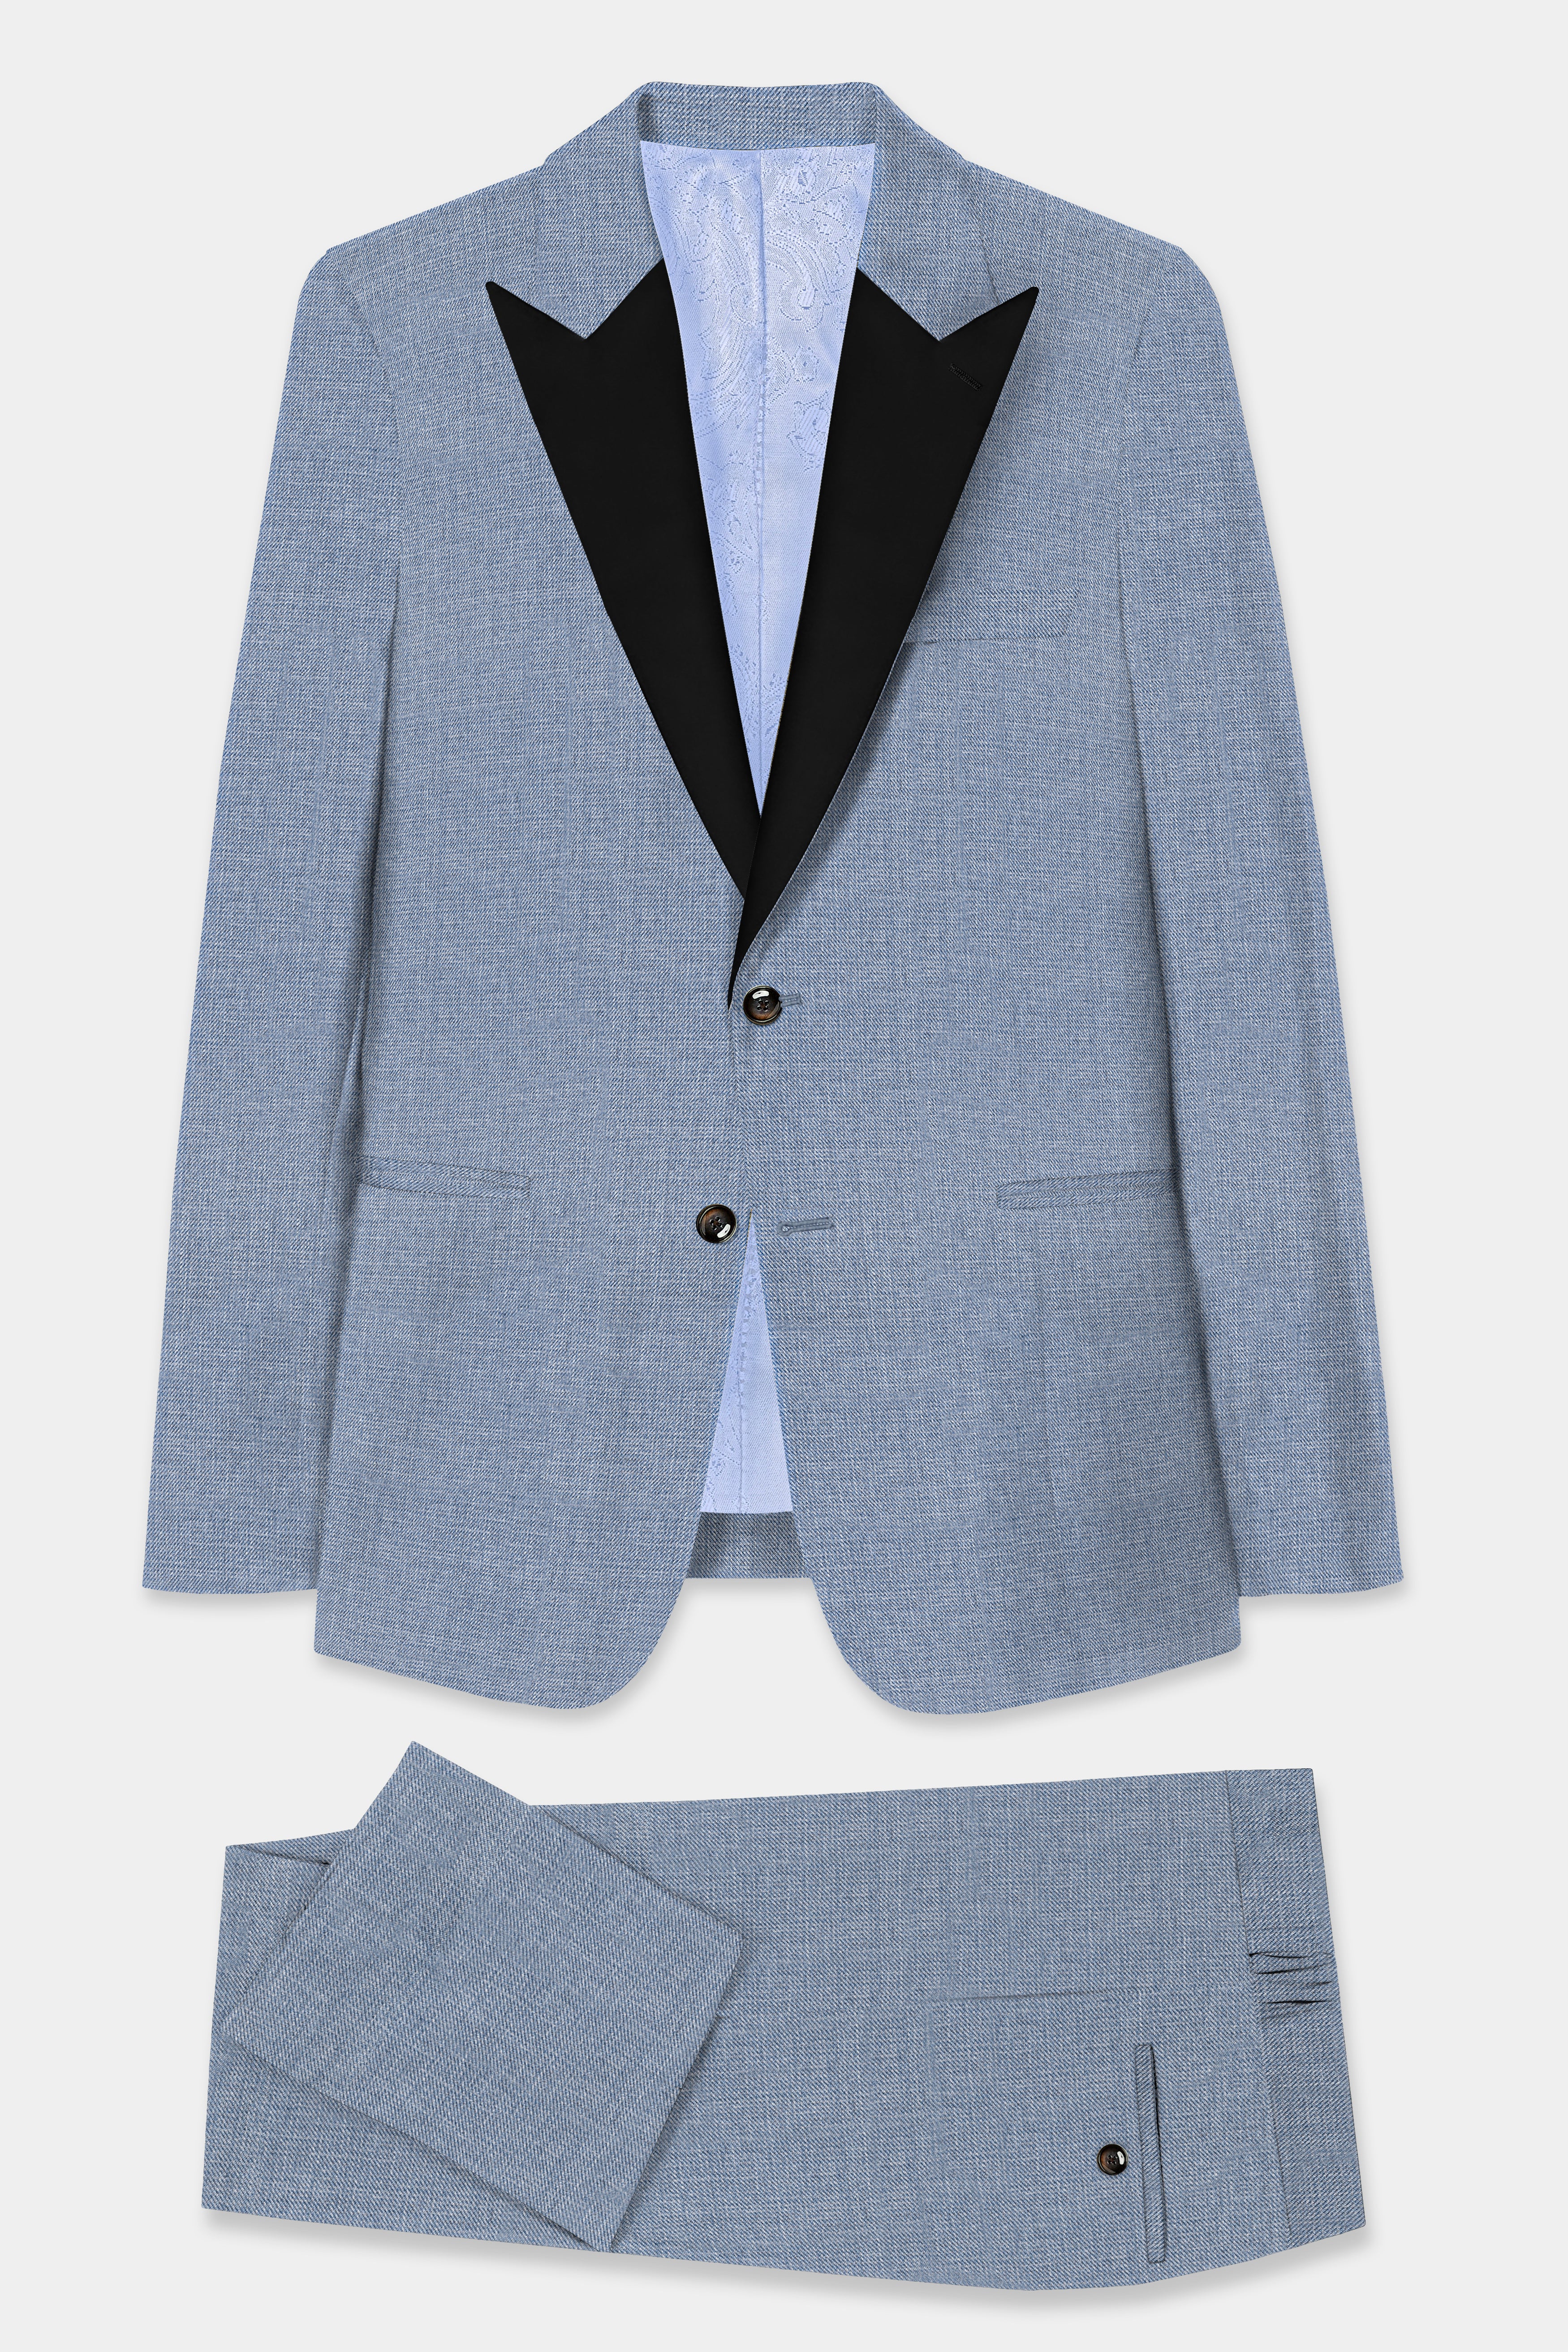 Bluish Wool Rich Peak Collar Tuxedo Suit